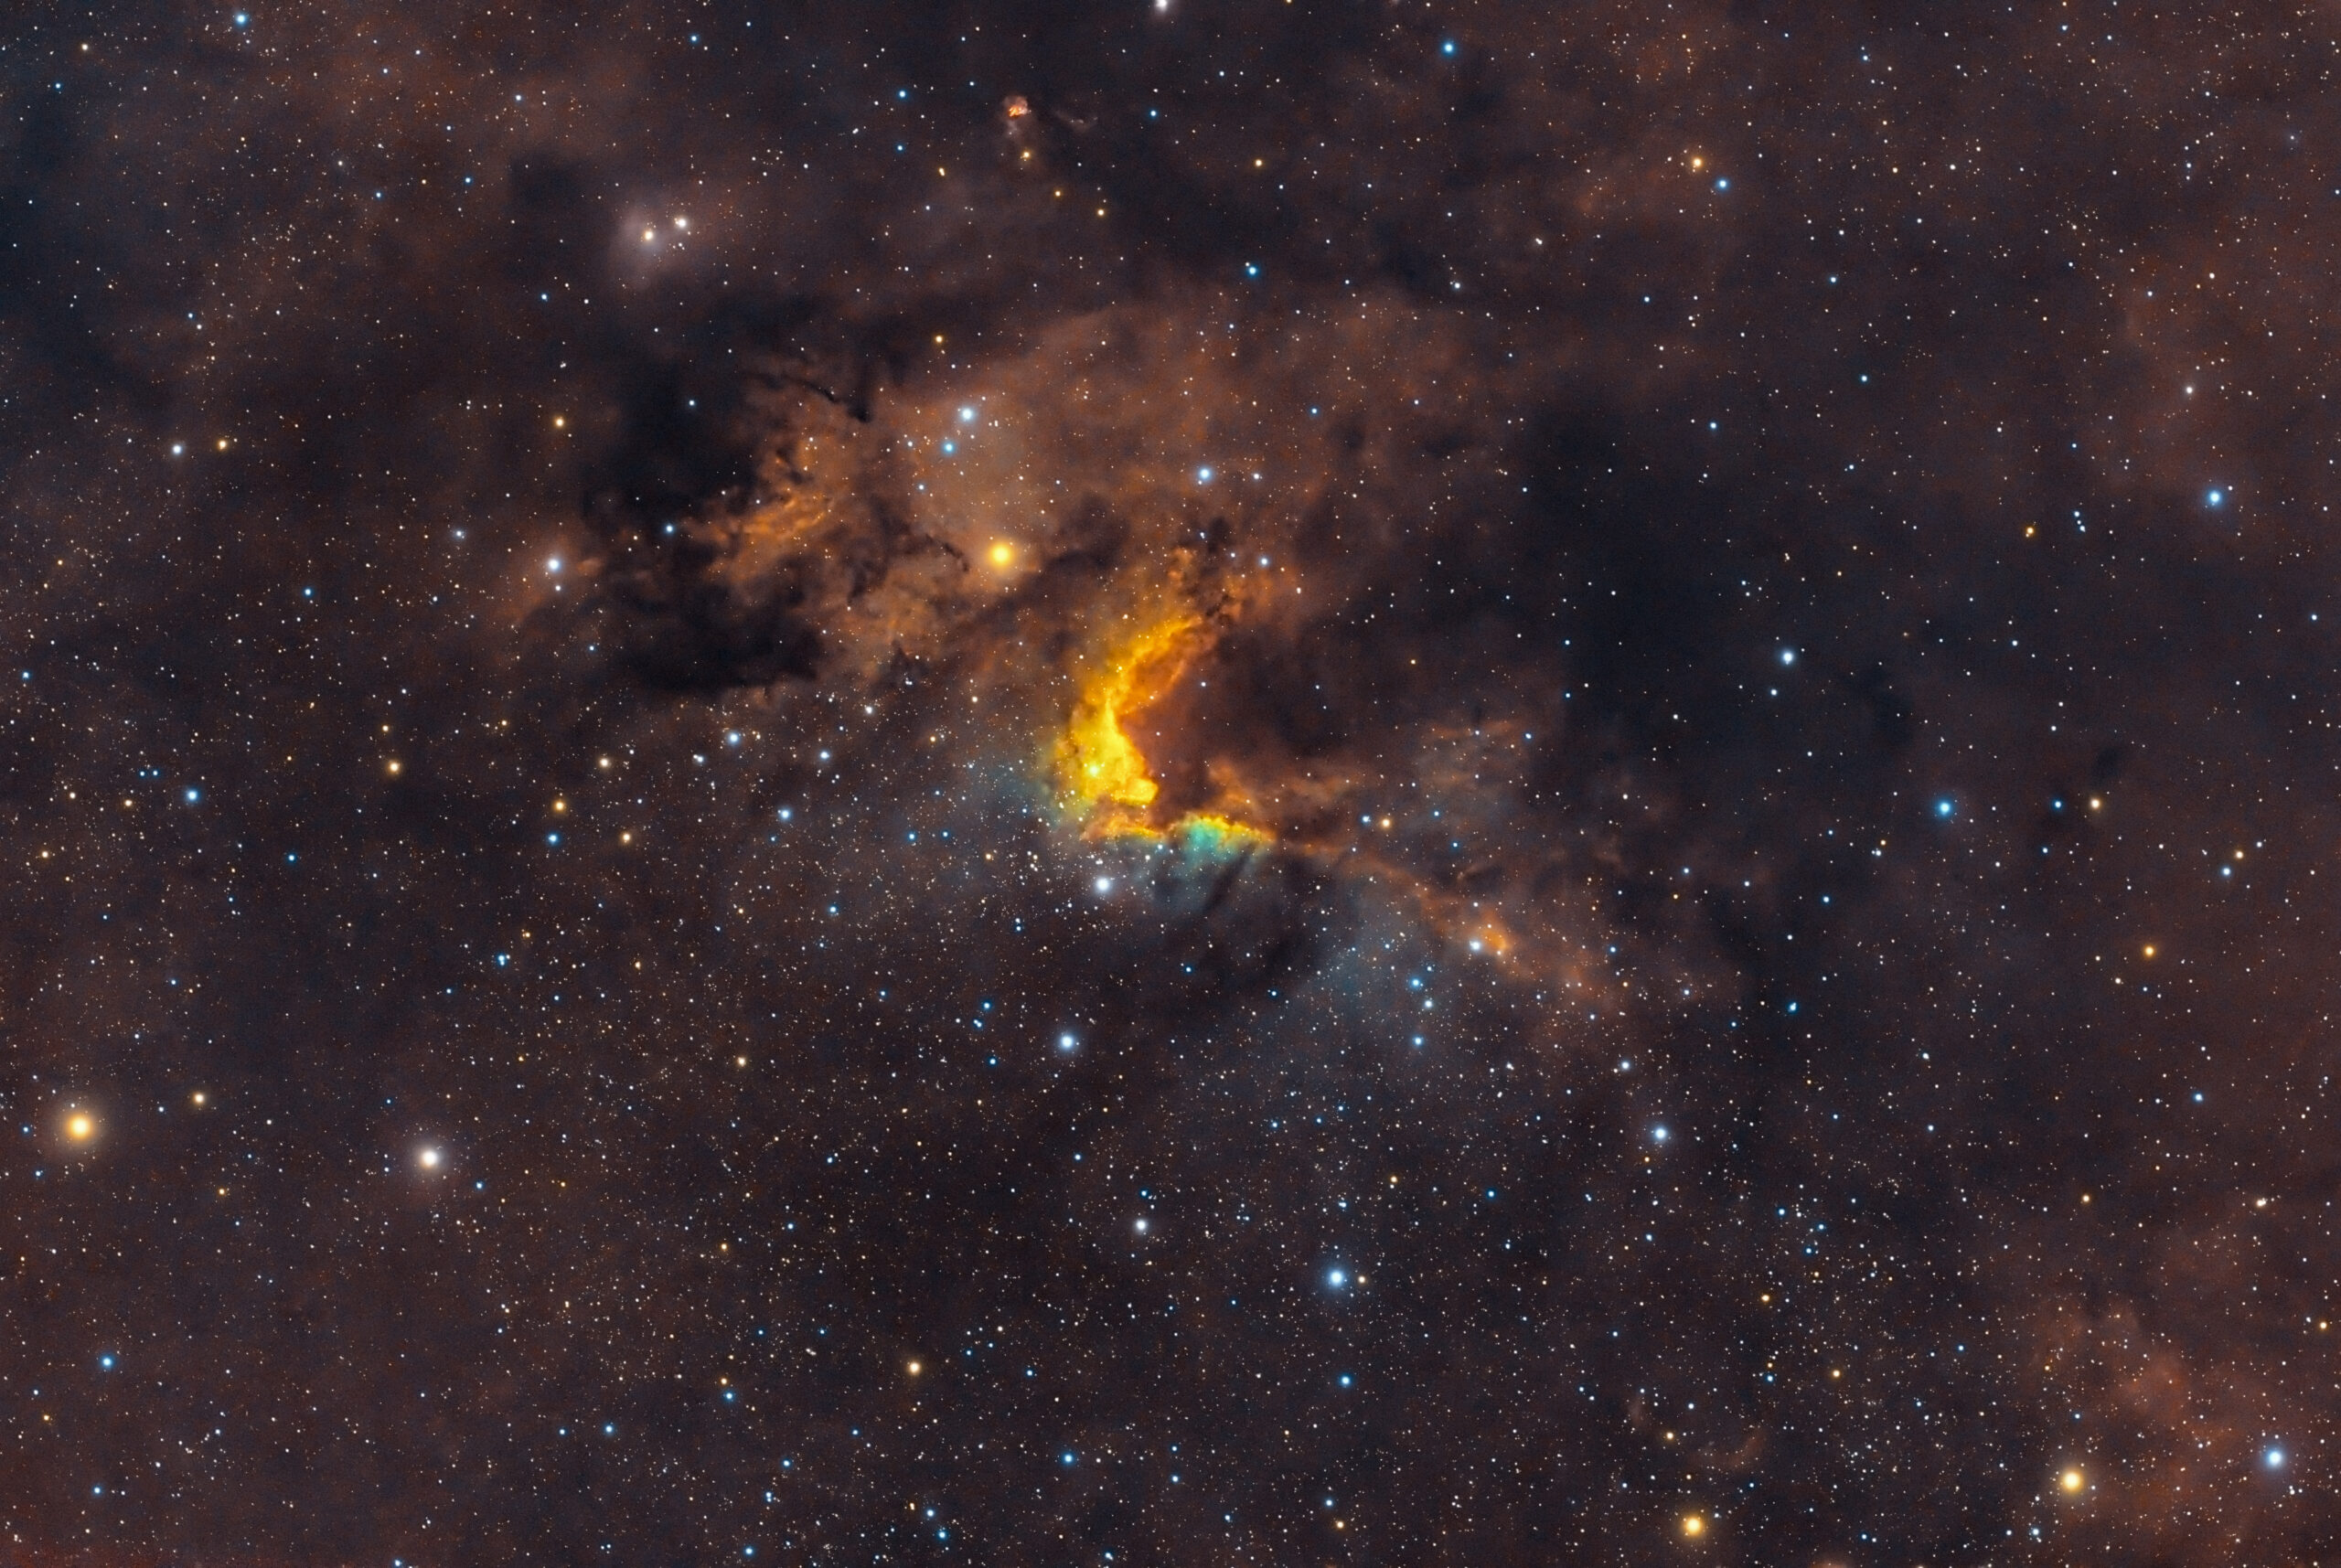 Sh2-155 (nota come Nebulosa Grotta) è una nebulosa ad emissione visibile nella costellazione di Cefeo.